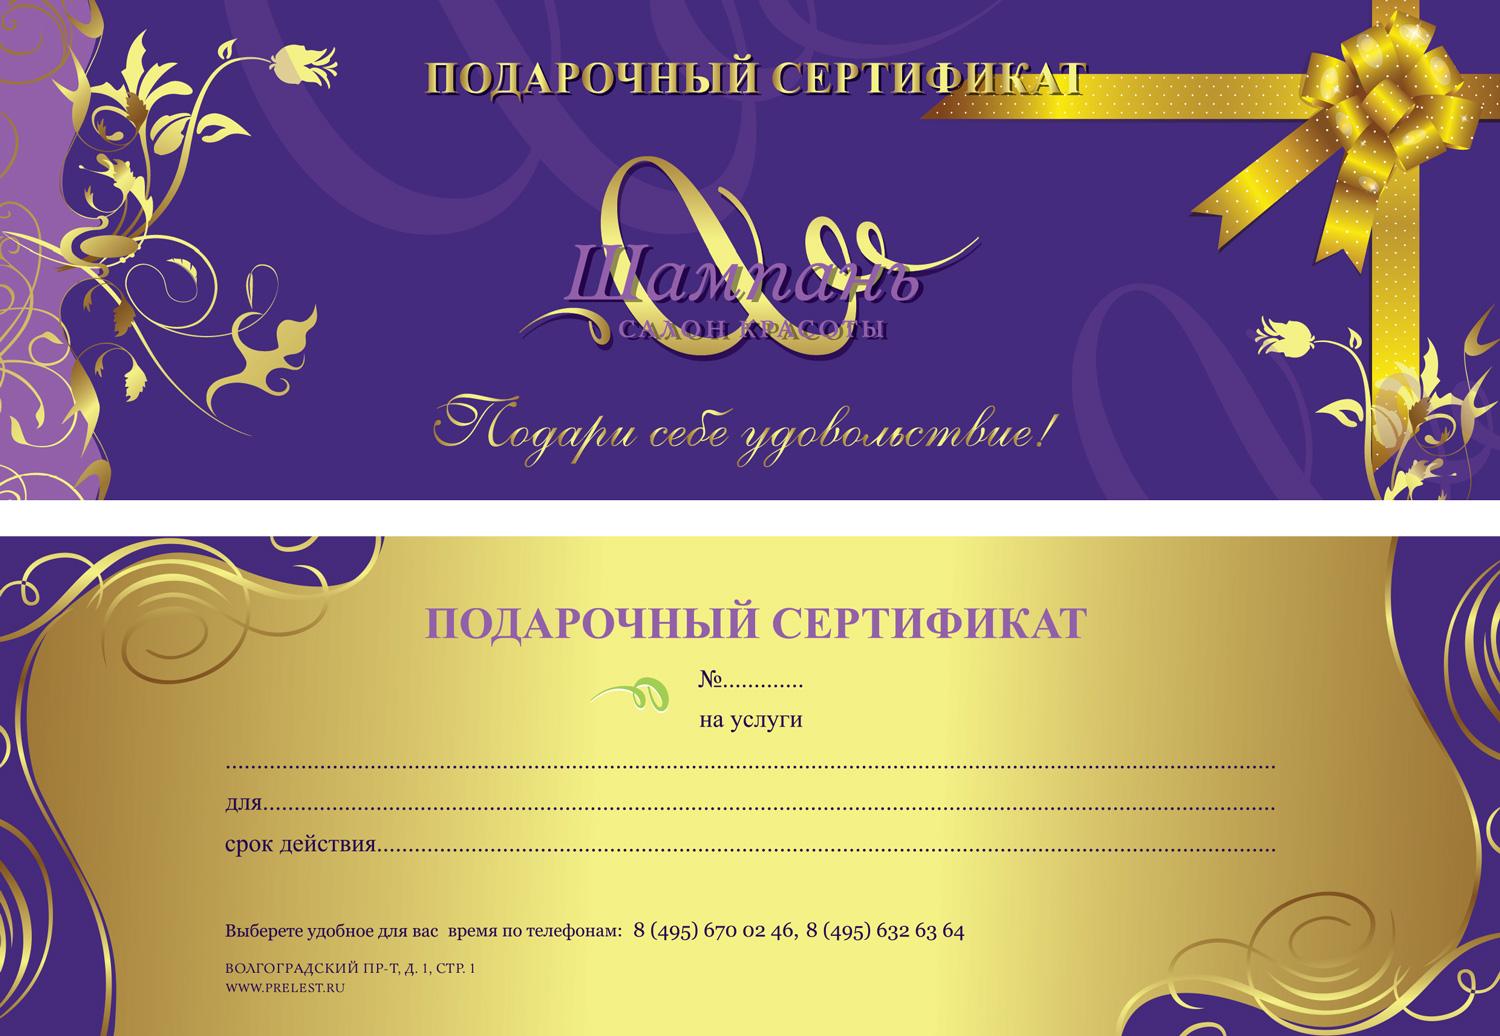 Подарочный сертификат в салон красоты шаблон